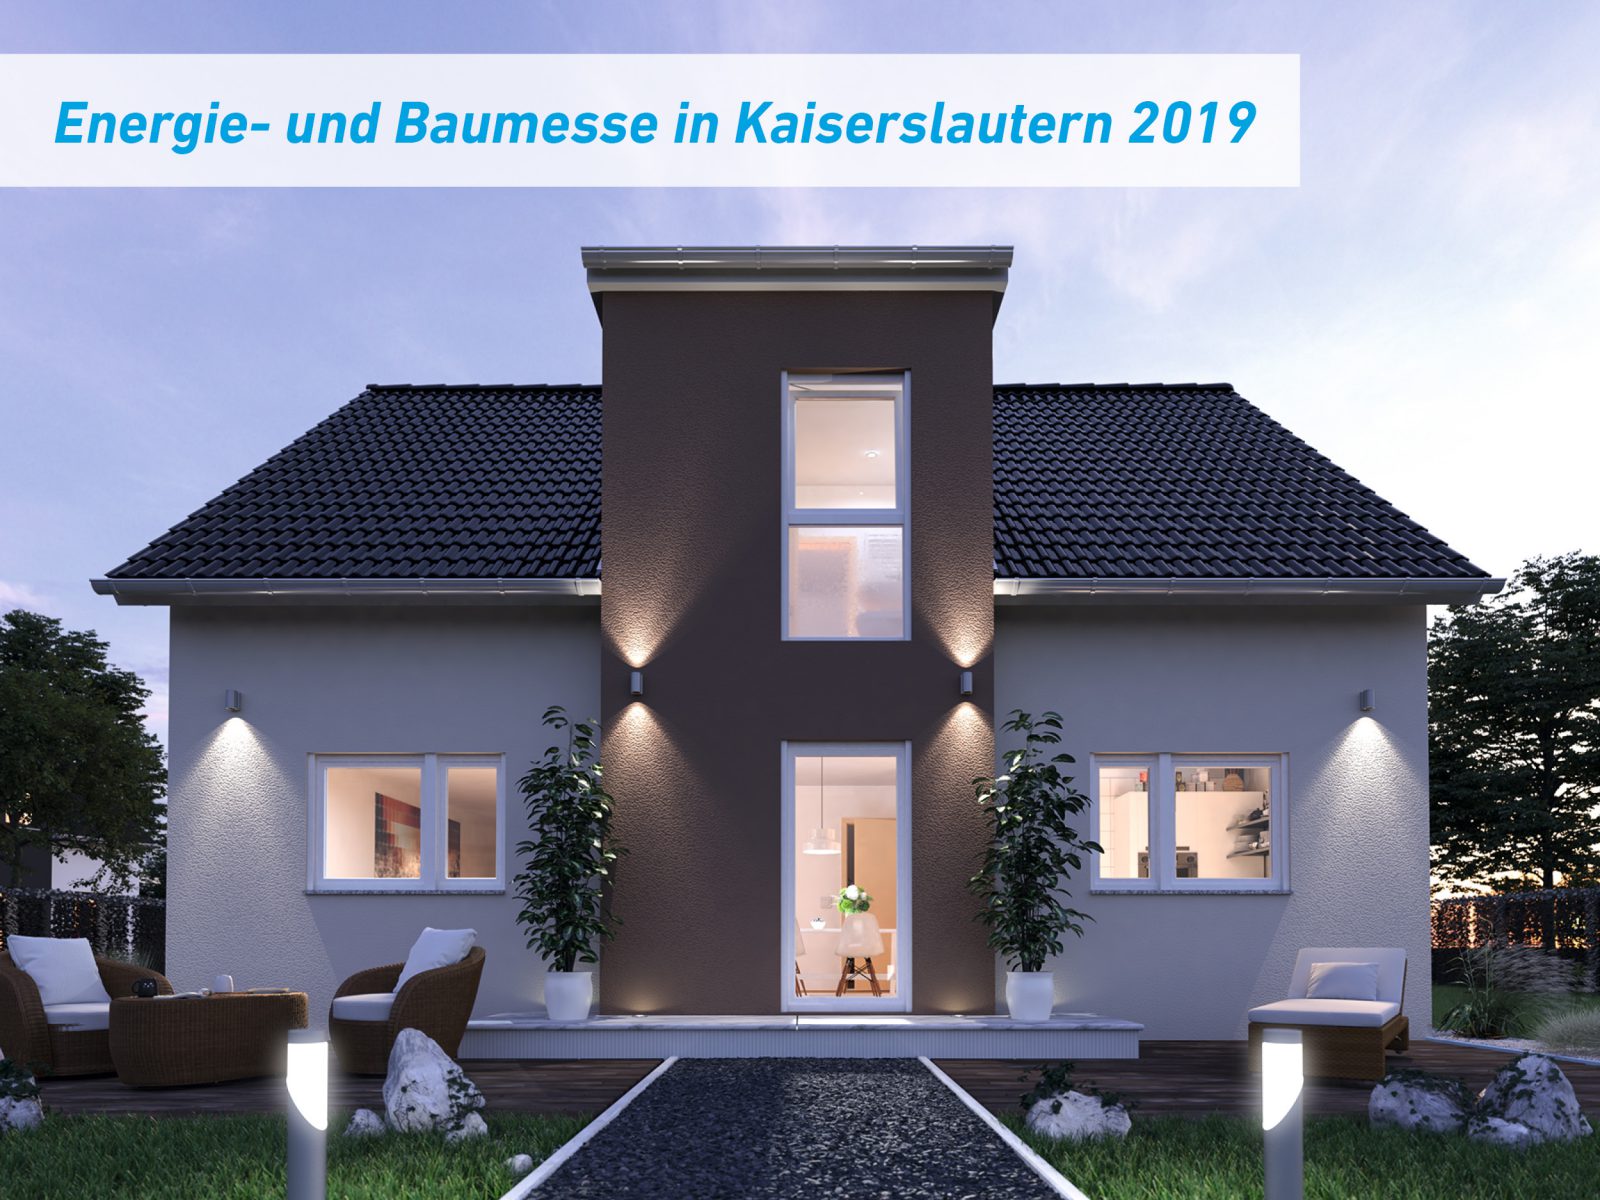 Energie- und Baumesse in Kaiserslautern 2019